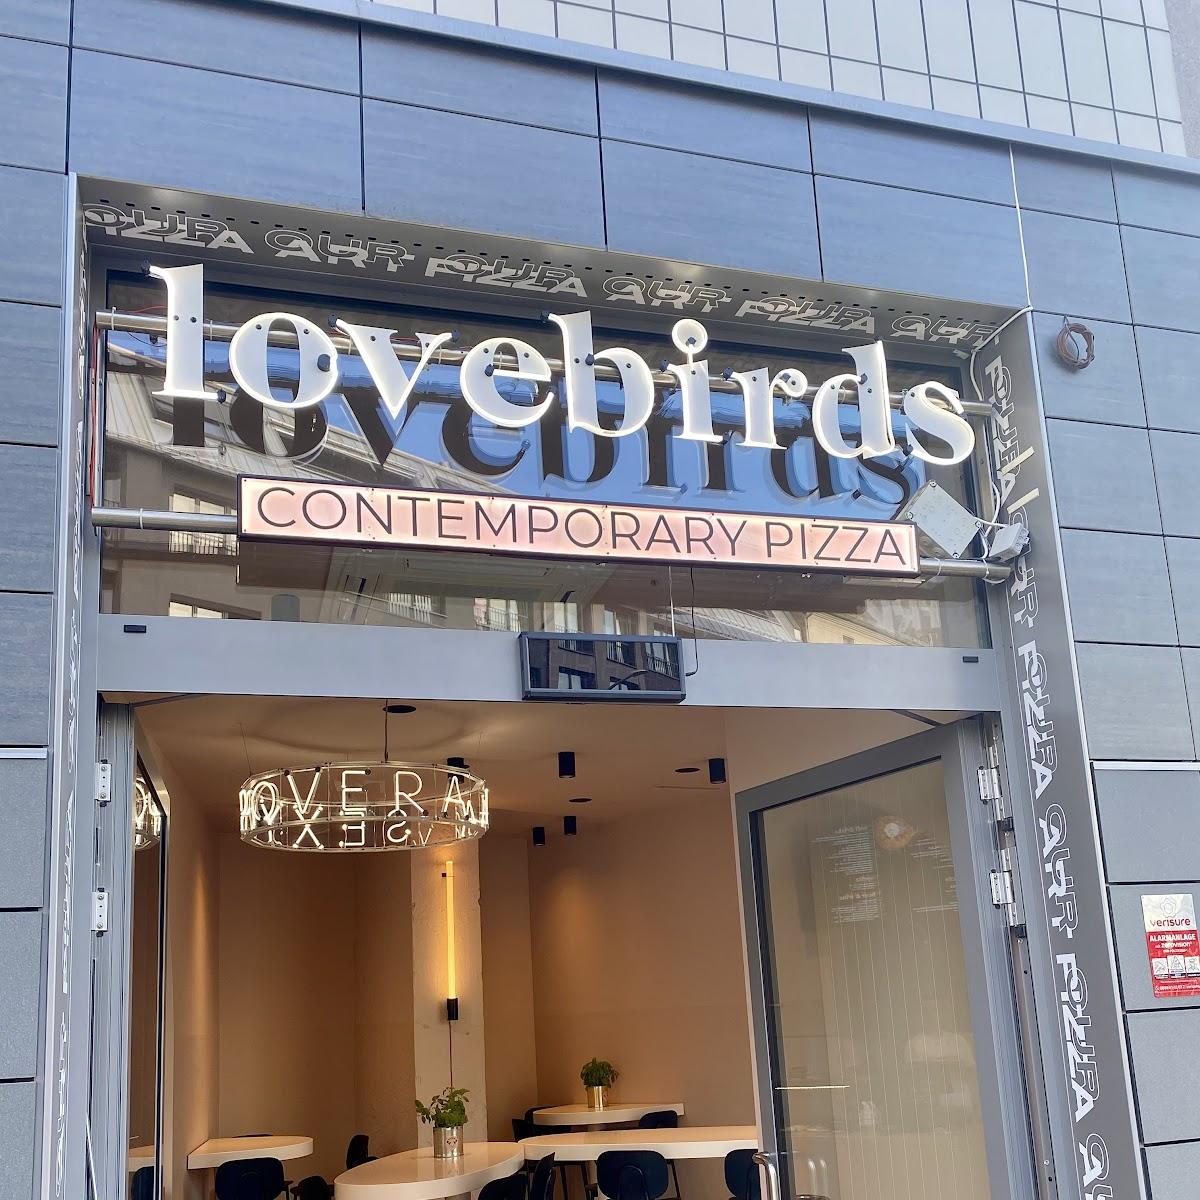 Restaurant "Lovebirds - Contemporary Pizza" in Berlin